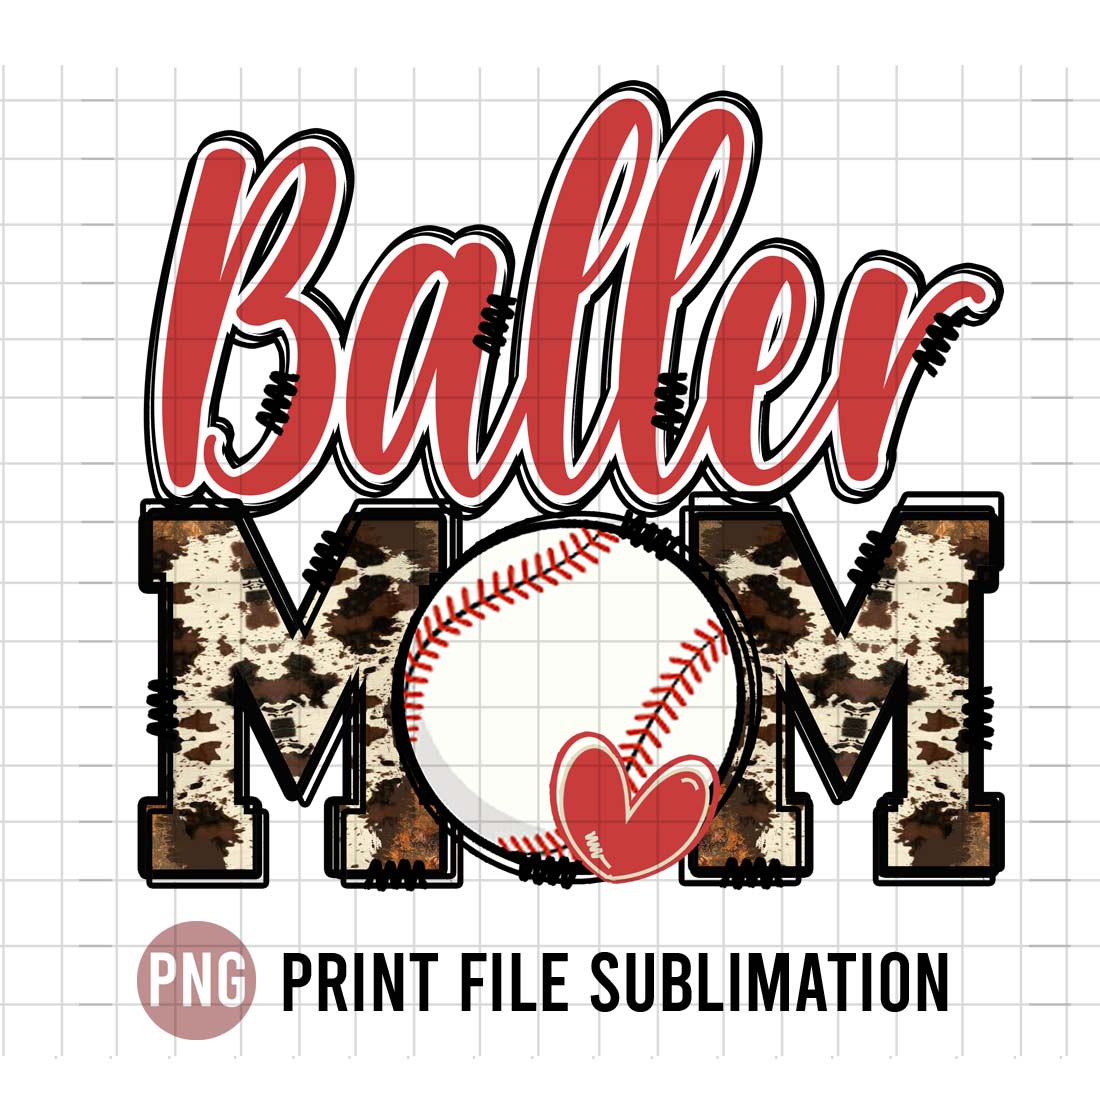 Baller Baseball Mom preview image.